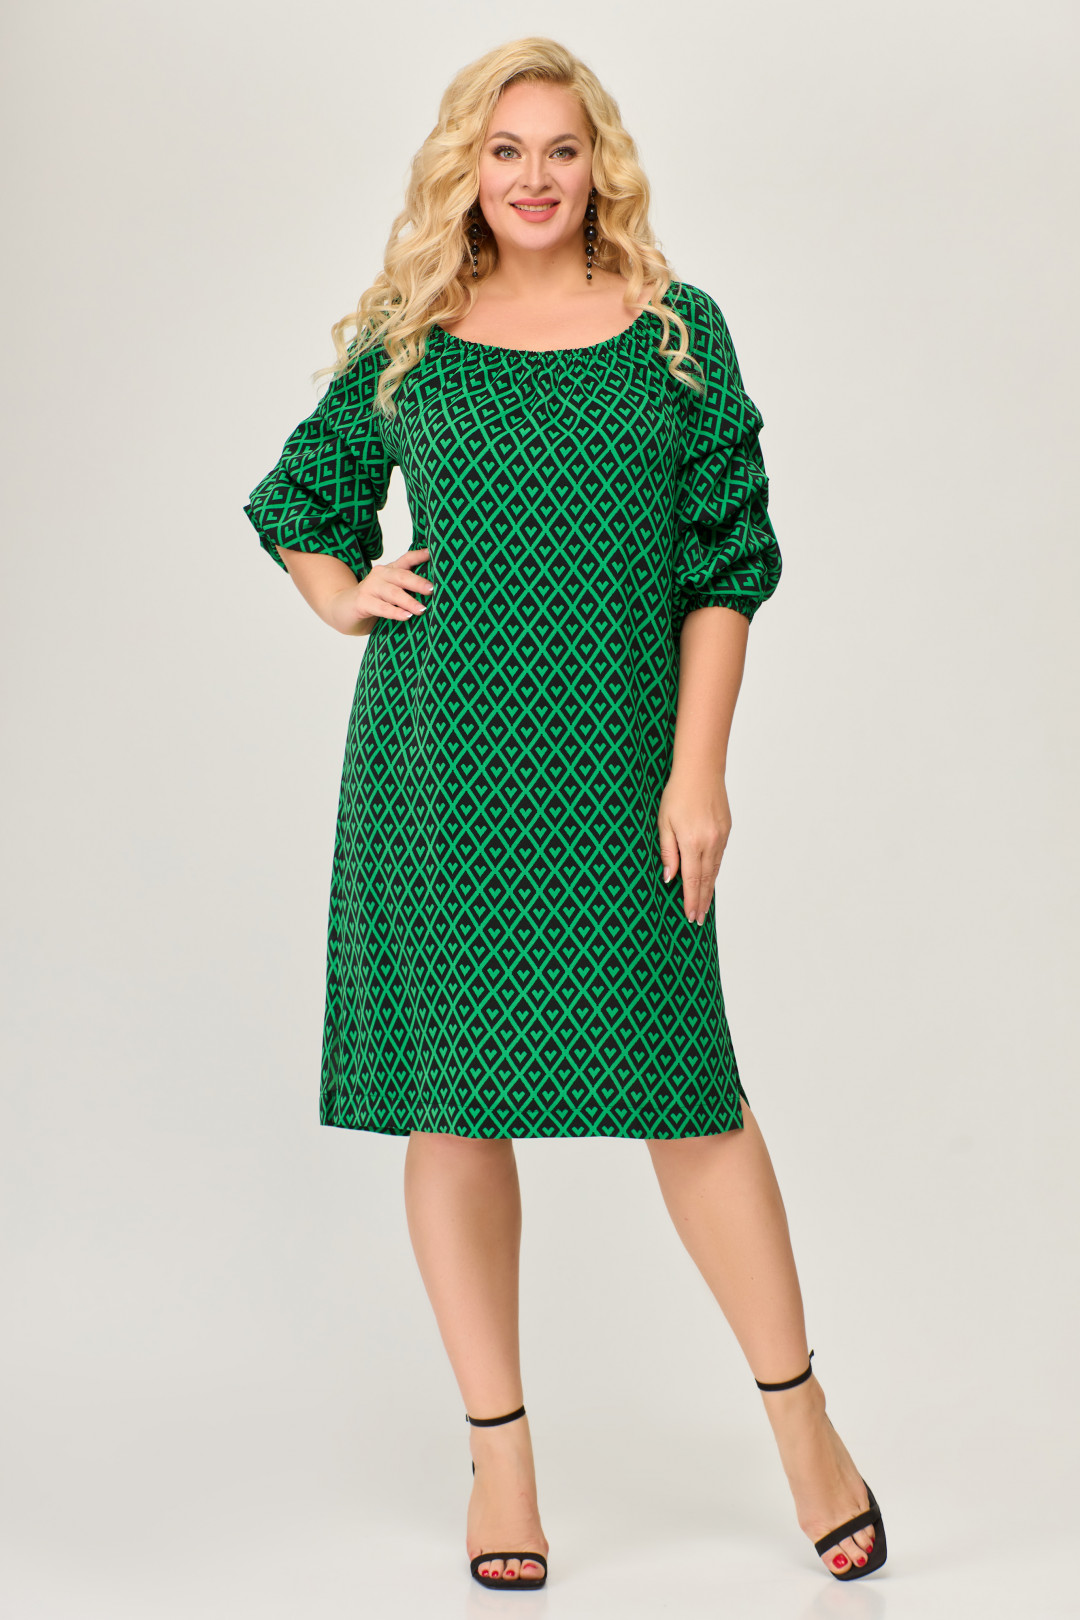 Платье Светлана-Стиль 1673 зеленый+черный